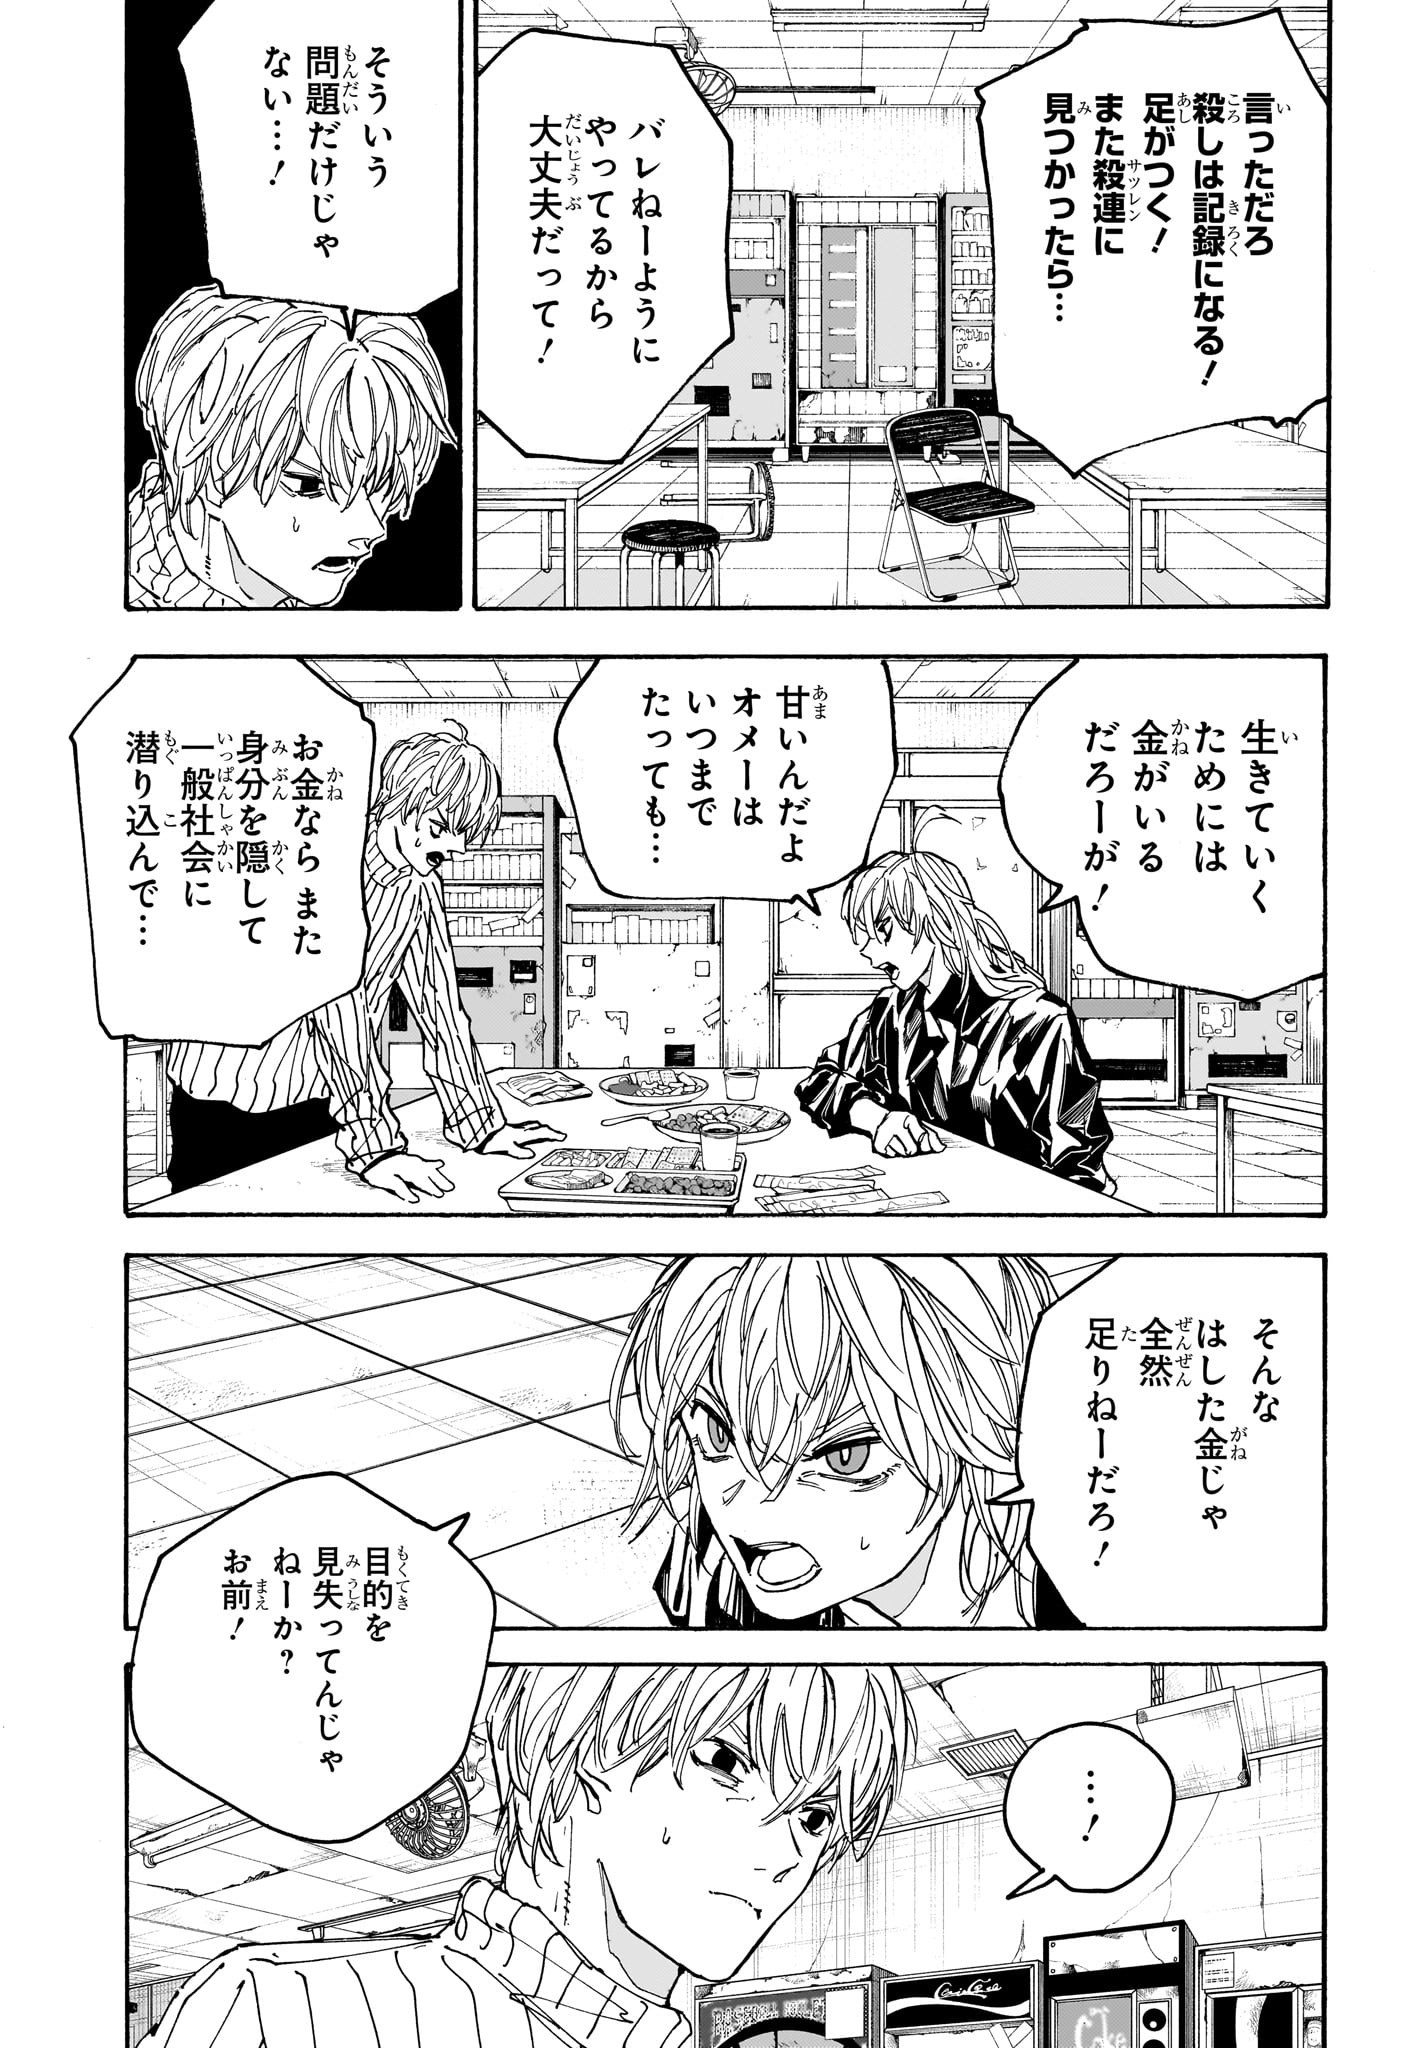 Sakamoto Days - Chapter 174 - Page 5